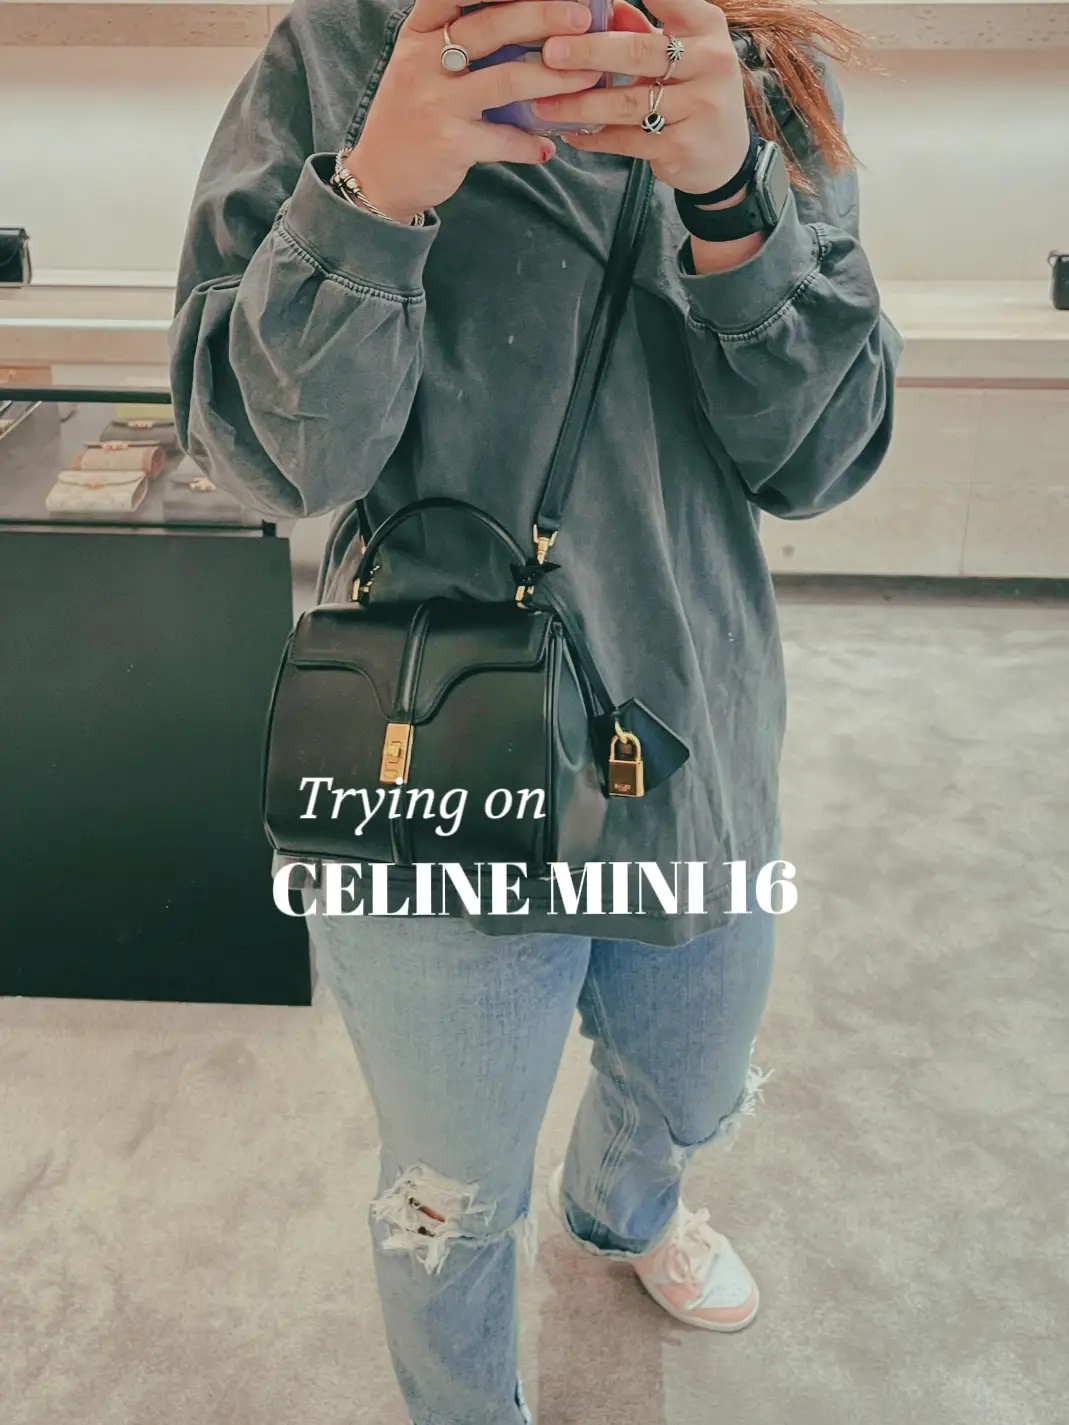 Celine Philippines: The latest Celine Celine Bags, Celine Footwear